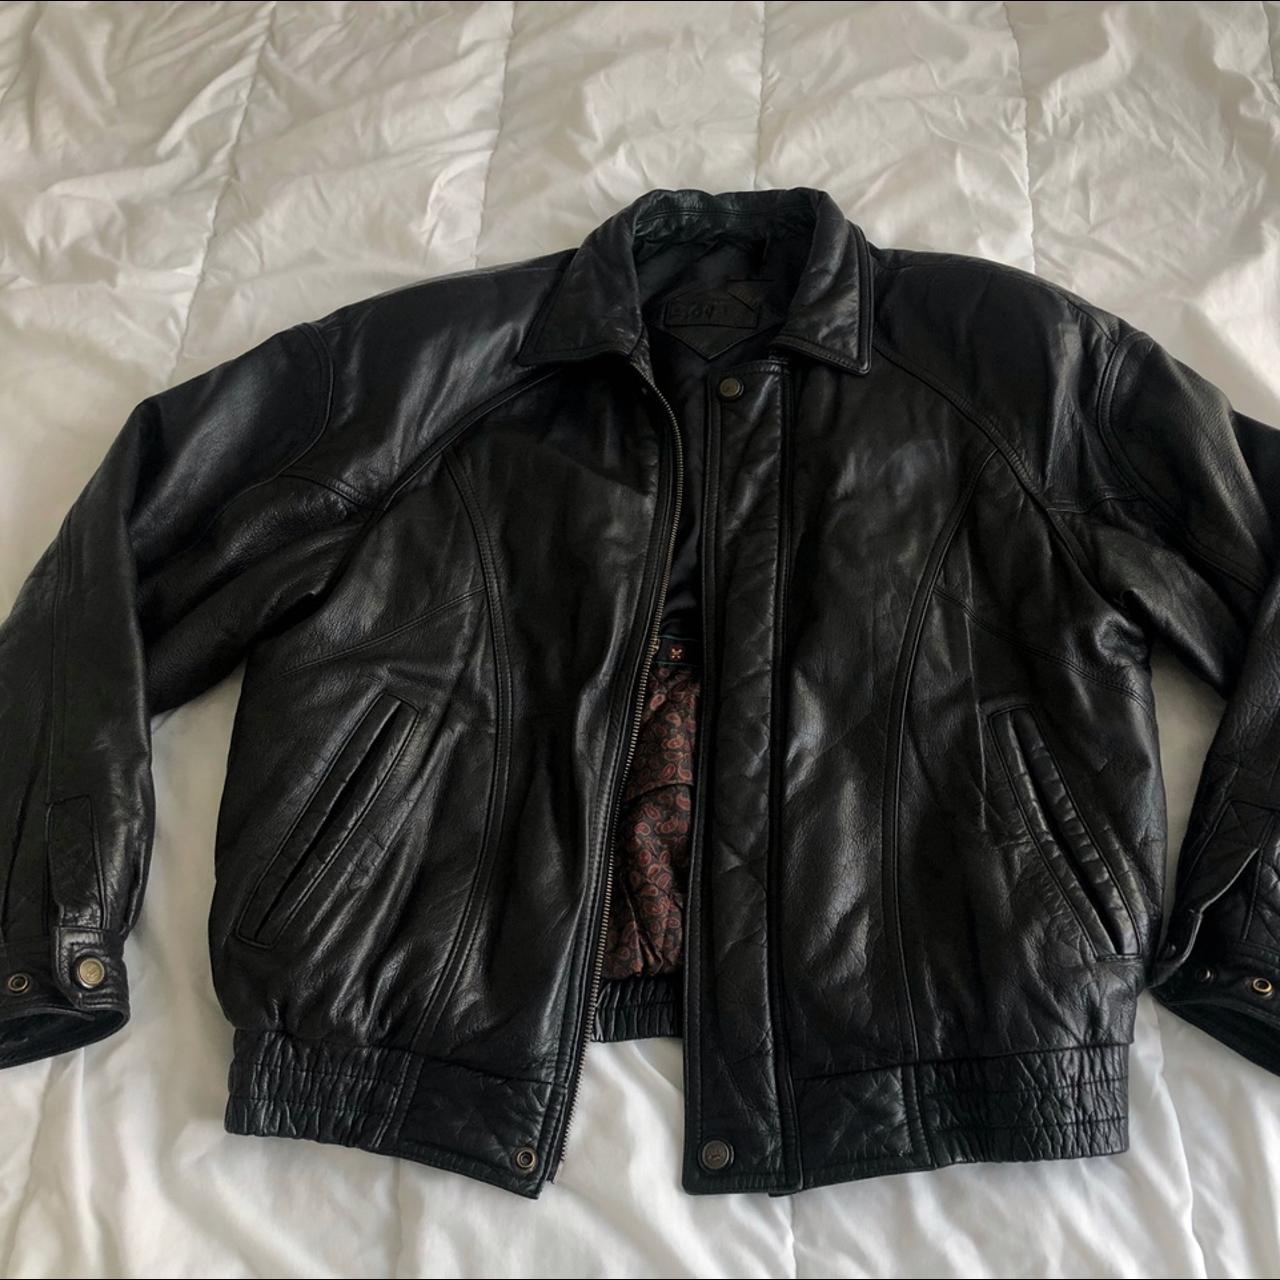 Moores Vintage Oversized Leather Jacket Size Mens... - Depop